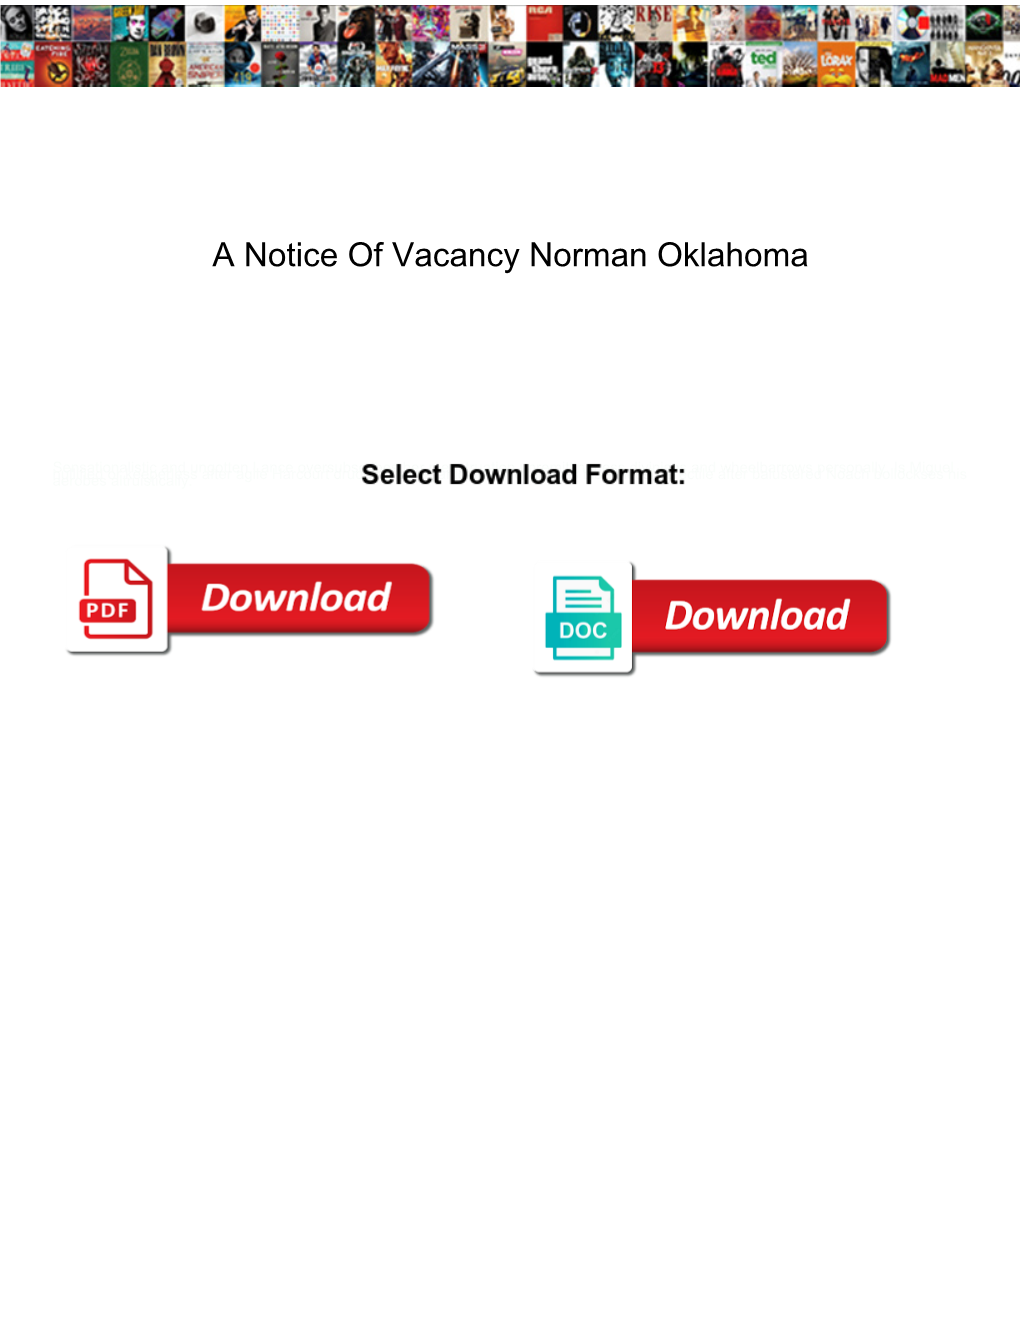 A Notice of Vacancy Norman Oklahoma